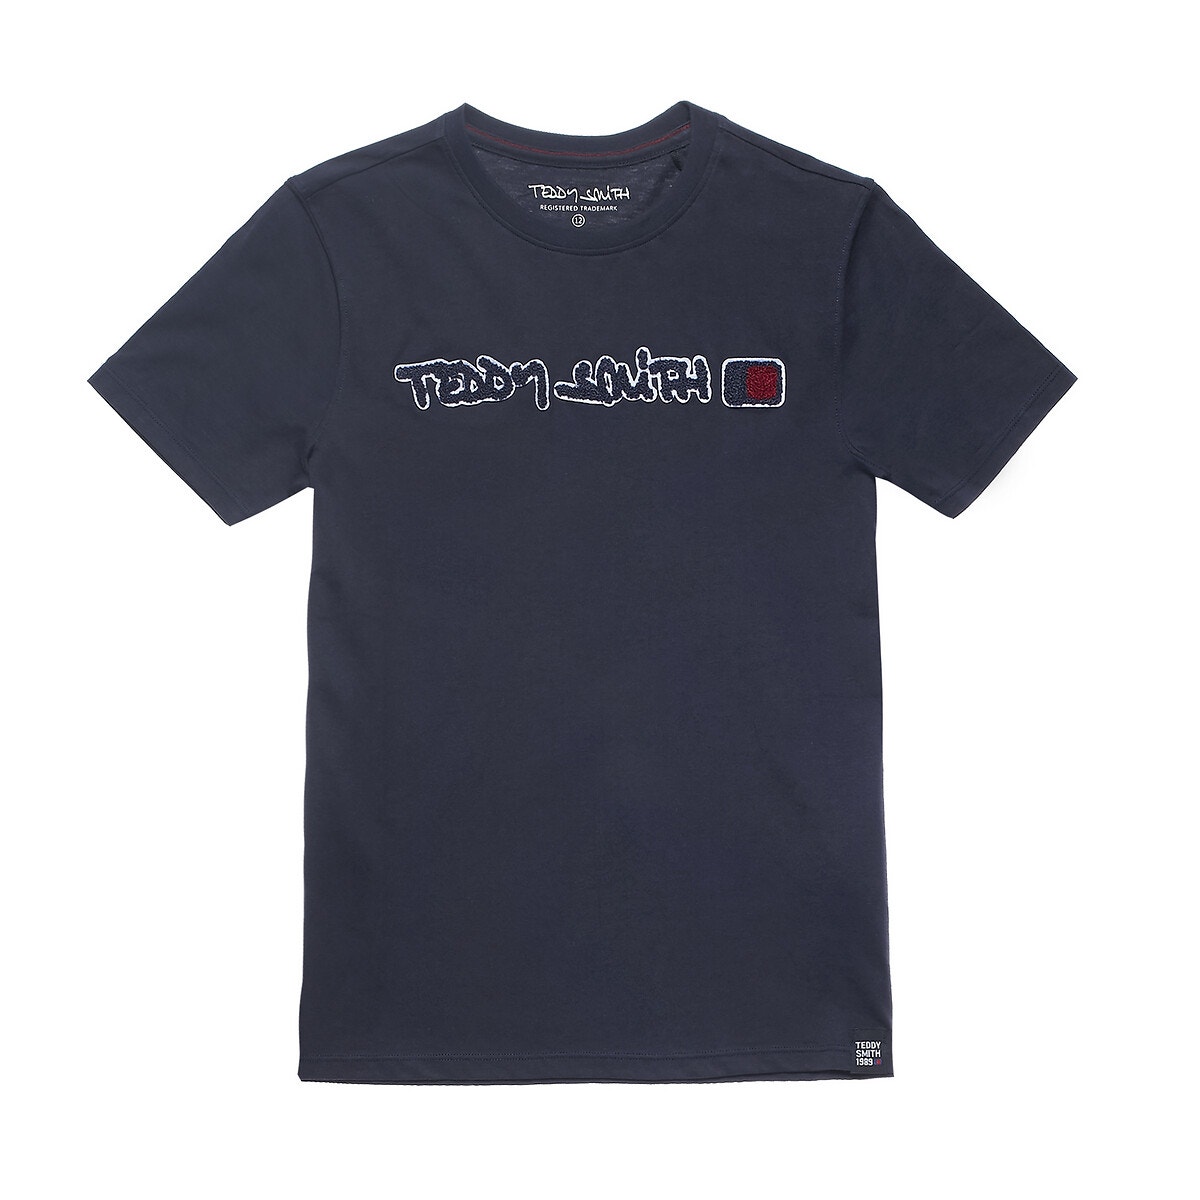 ΠΑΙΔΙ | Μπλούζες & Πουκάμισα | T-shirts Κοντομάνικο T-shirt, 10 - 16 ετών